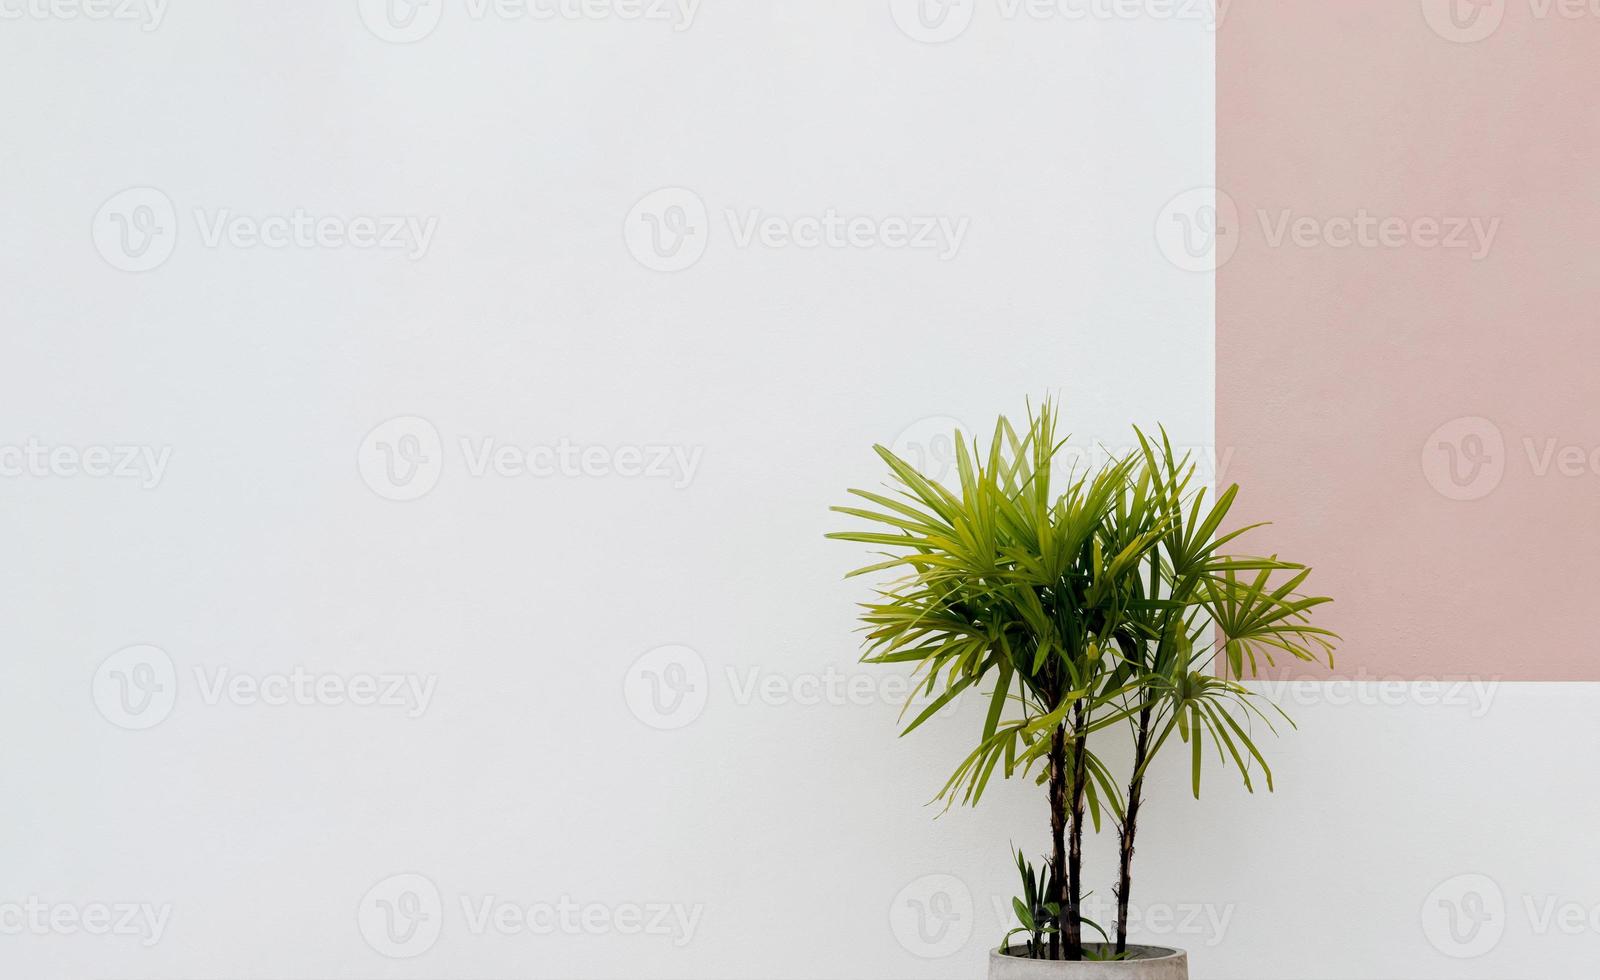 palmera de señora en decoración de macetas en la pared de cemento del edificio, planta de maceta aislada junto a fondo de hormigón blanco, la palmera rhapis excelsa es perfecta para un florecimiento de exuberante vegetación interior para la decoración foto